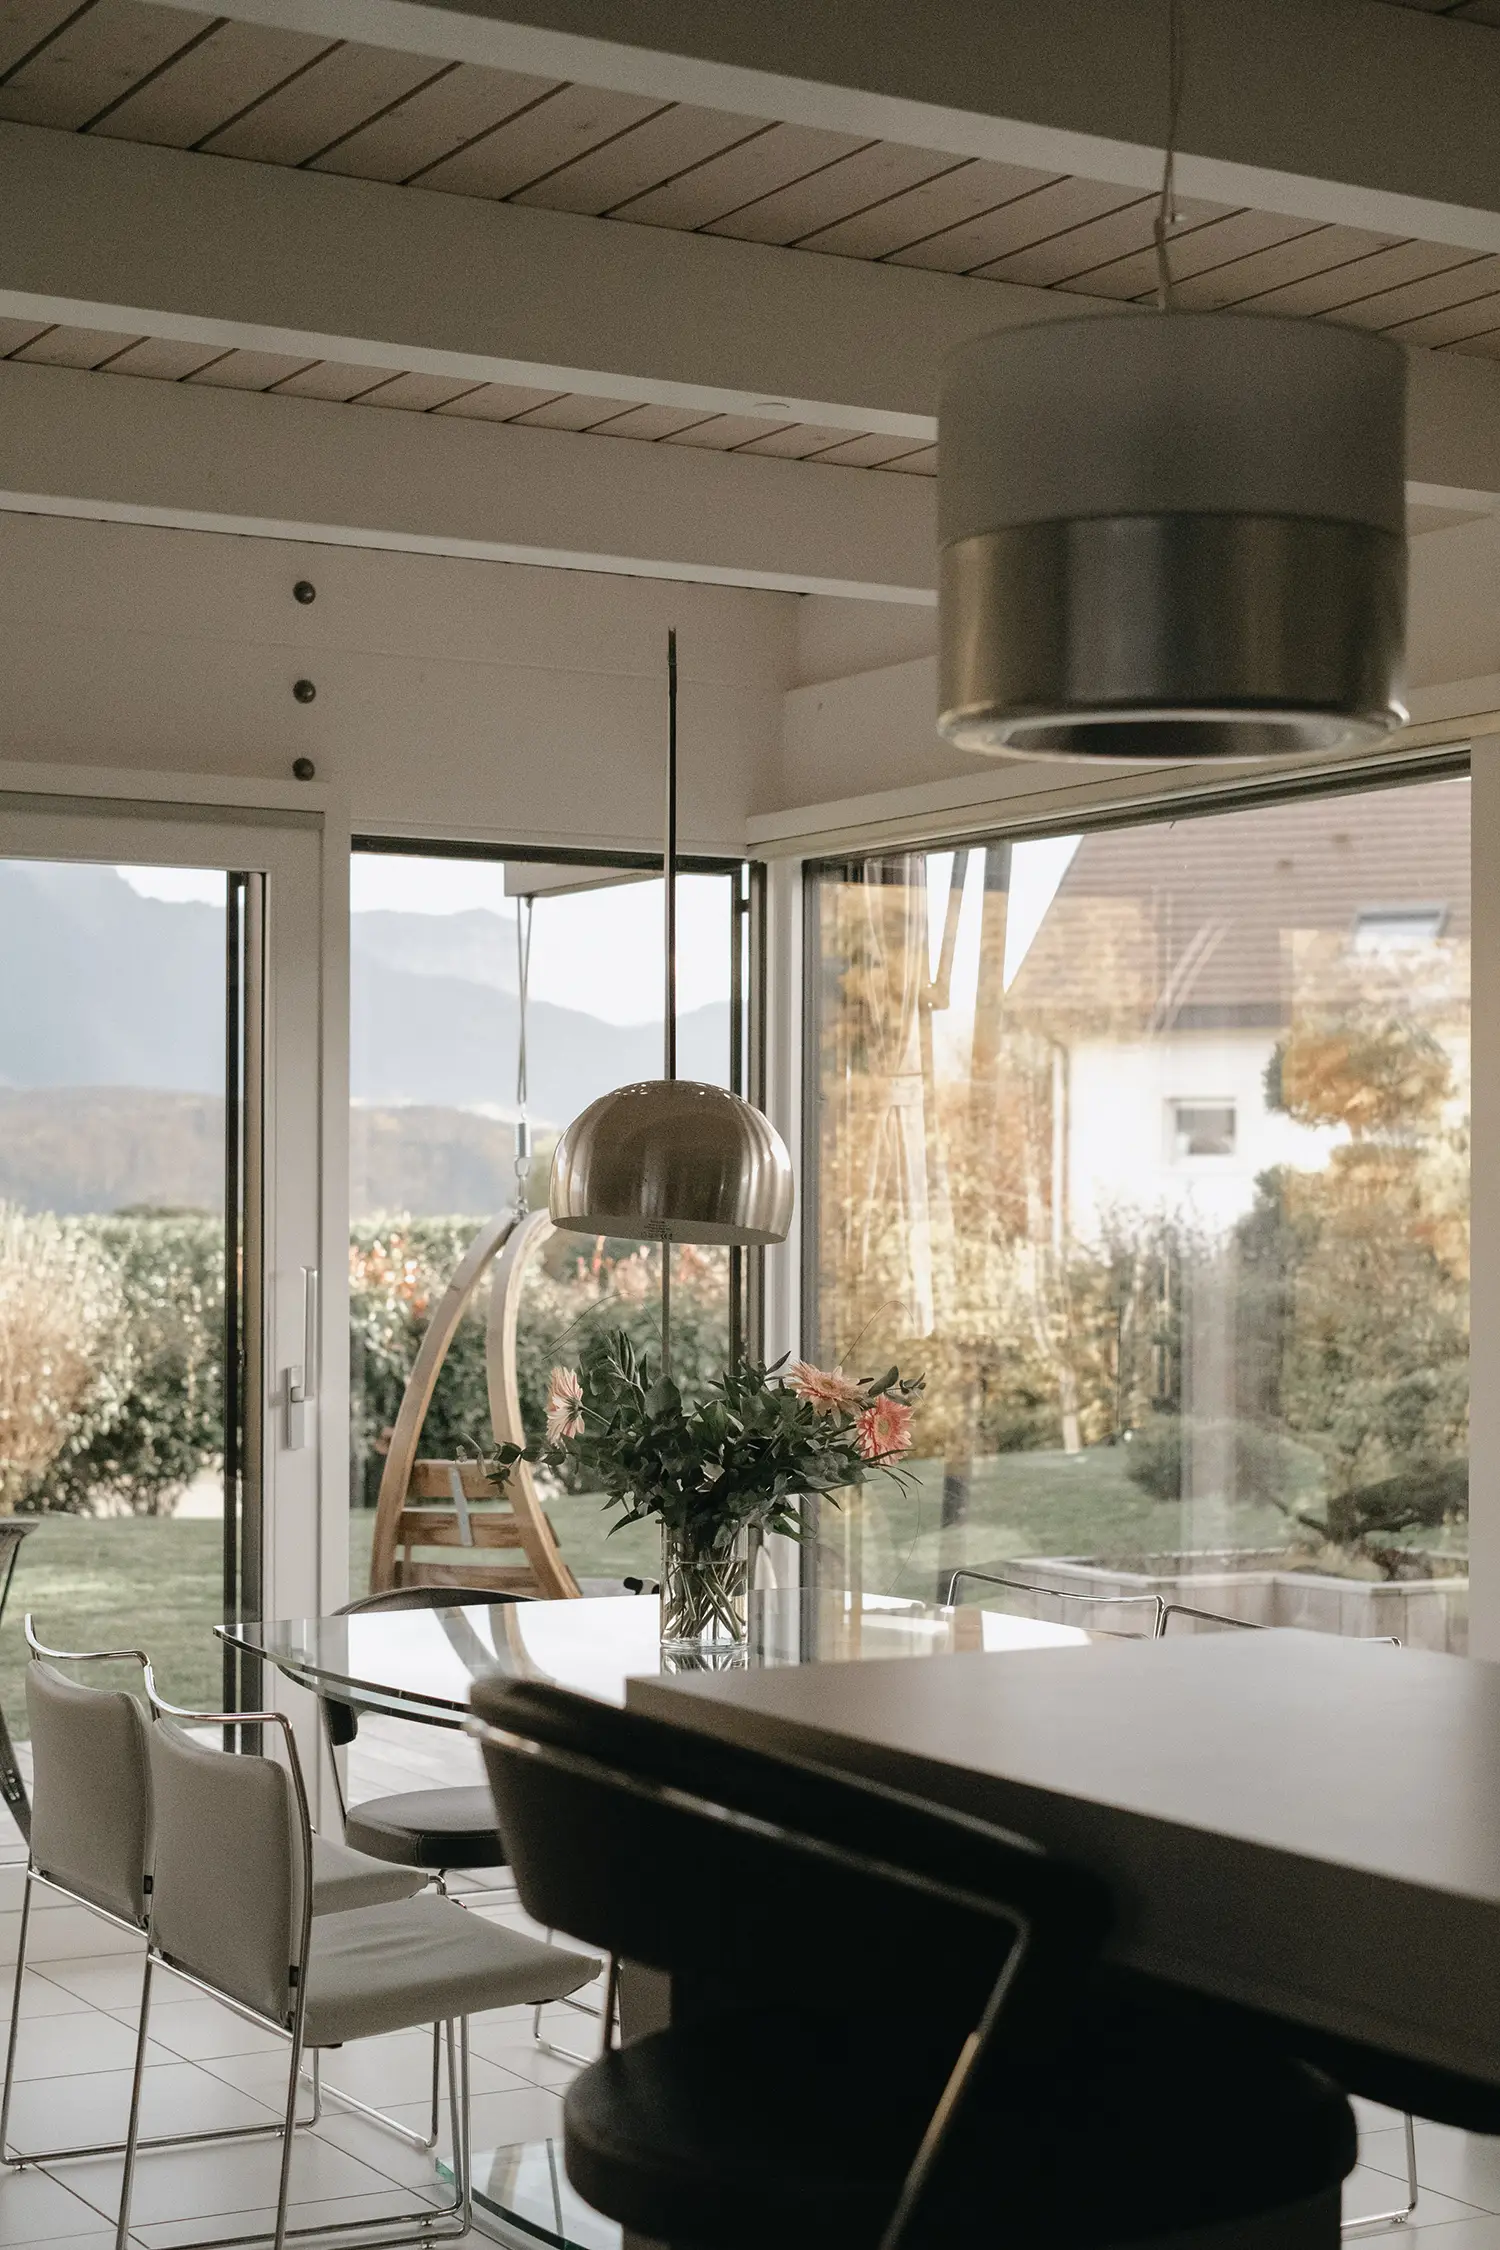 Foto sala da pranzo con tavolo estendibile e lampada ad arco per illuminazione diretta, progetto di ristrutturazione dello studio Elles Interior Design.